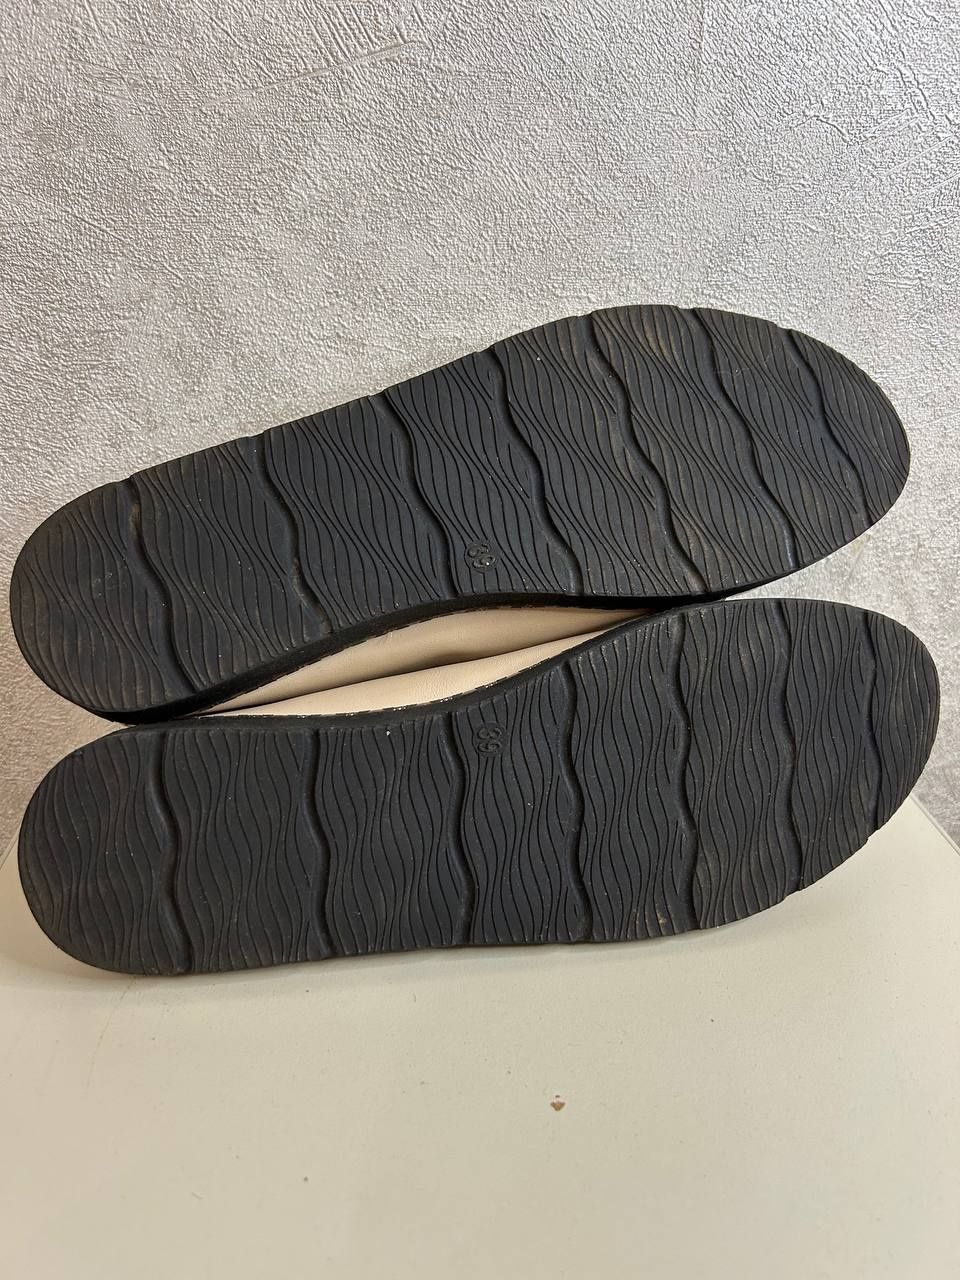 Женские мокасины туфли кеды кроссовки бежевые недорого размер  36 39